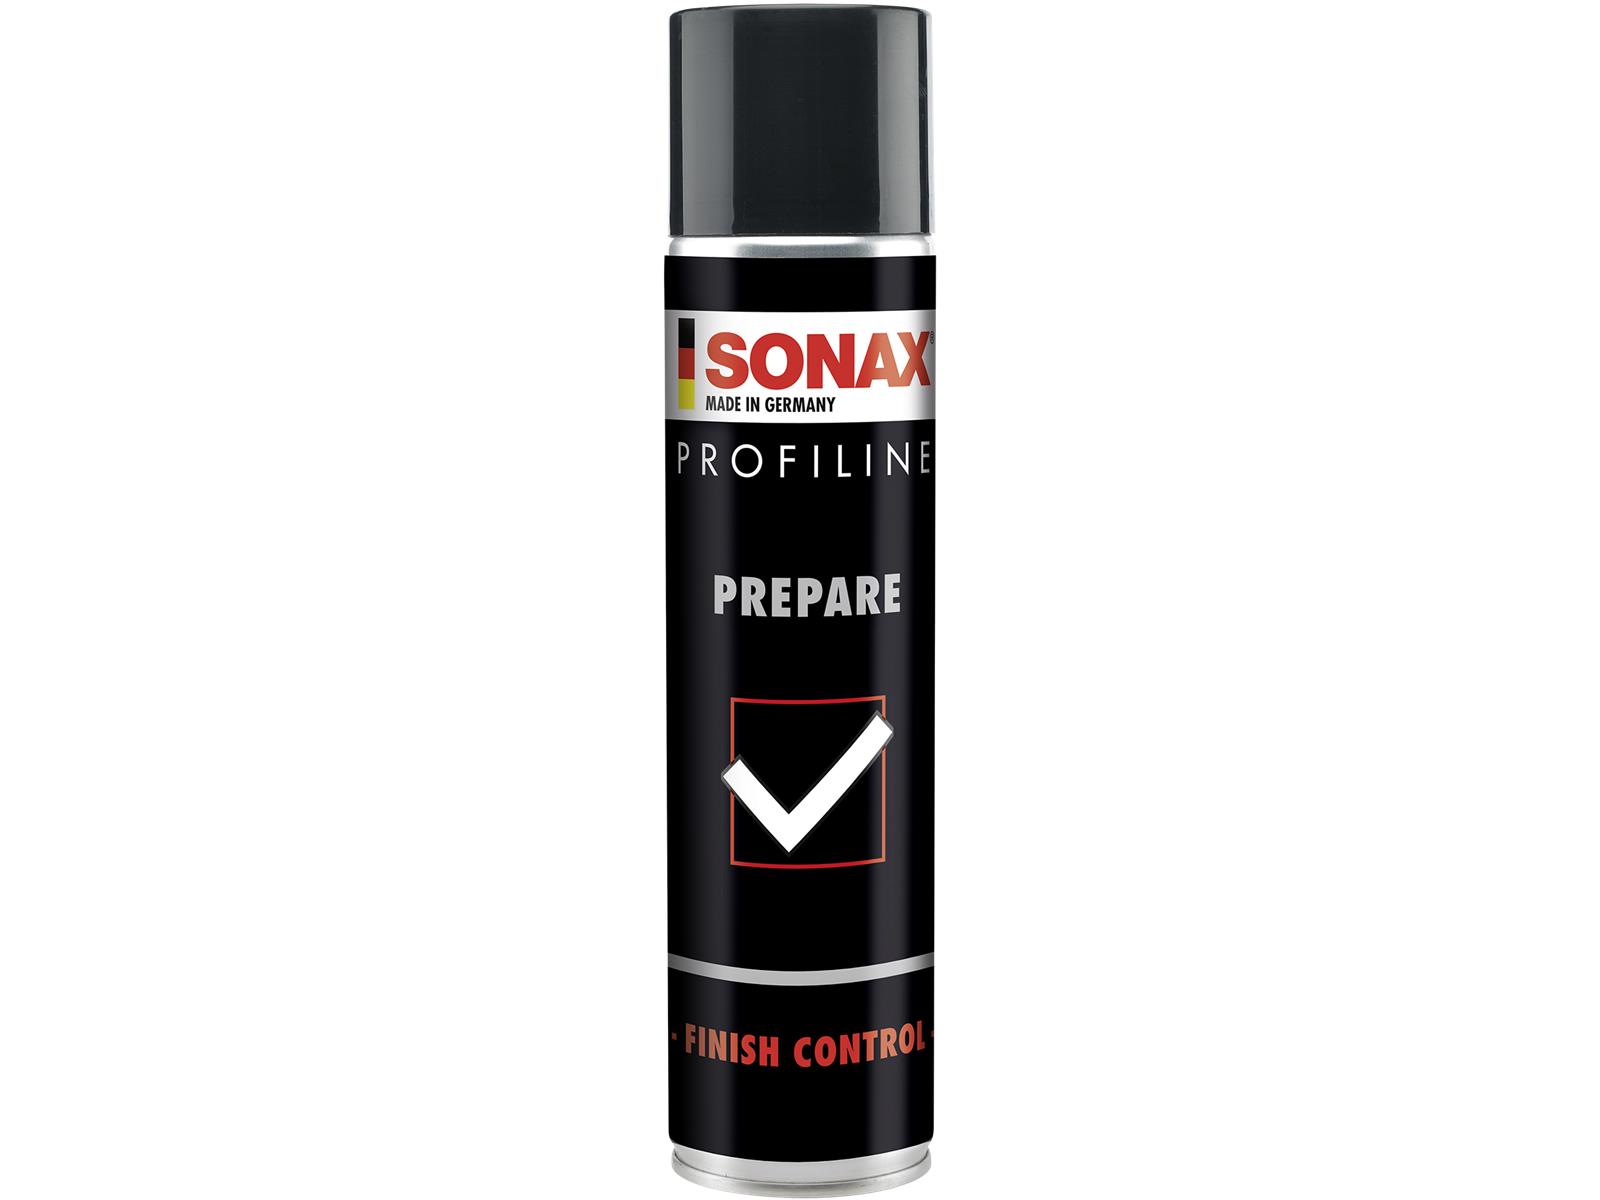 SONAX 02373000 PROFILINE Prepare 400 ml